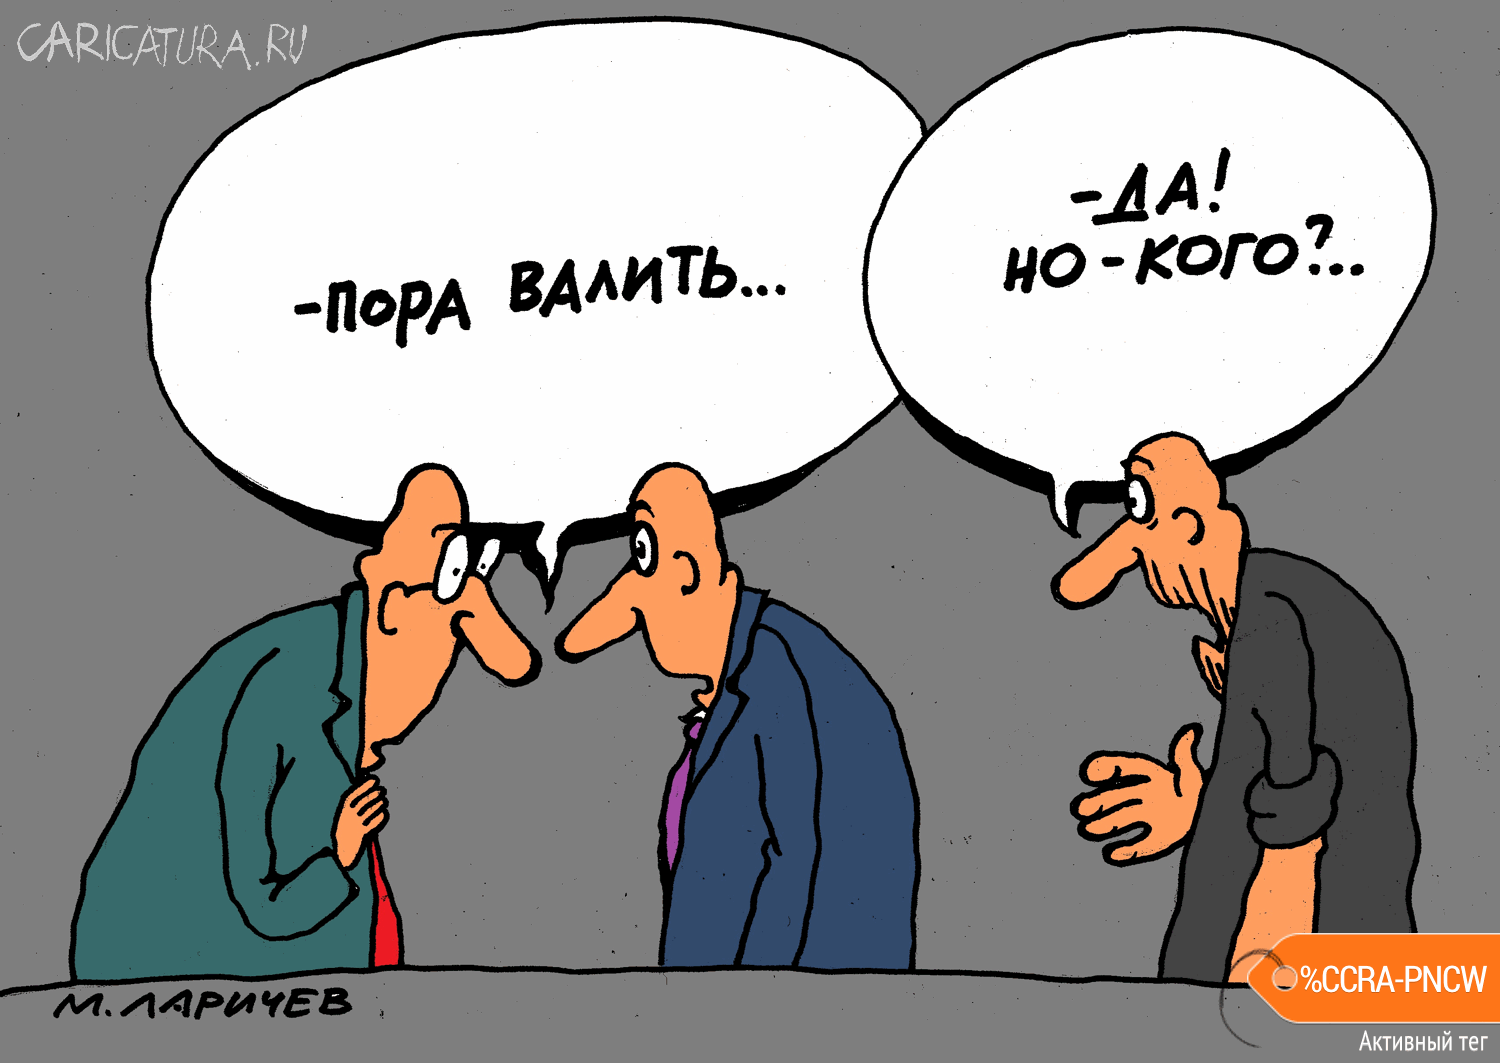 Карикатура "Вопрос...", Михаил Ларичев